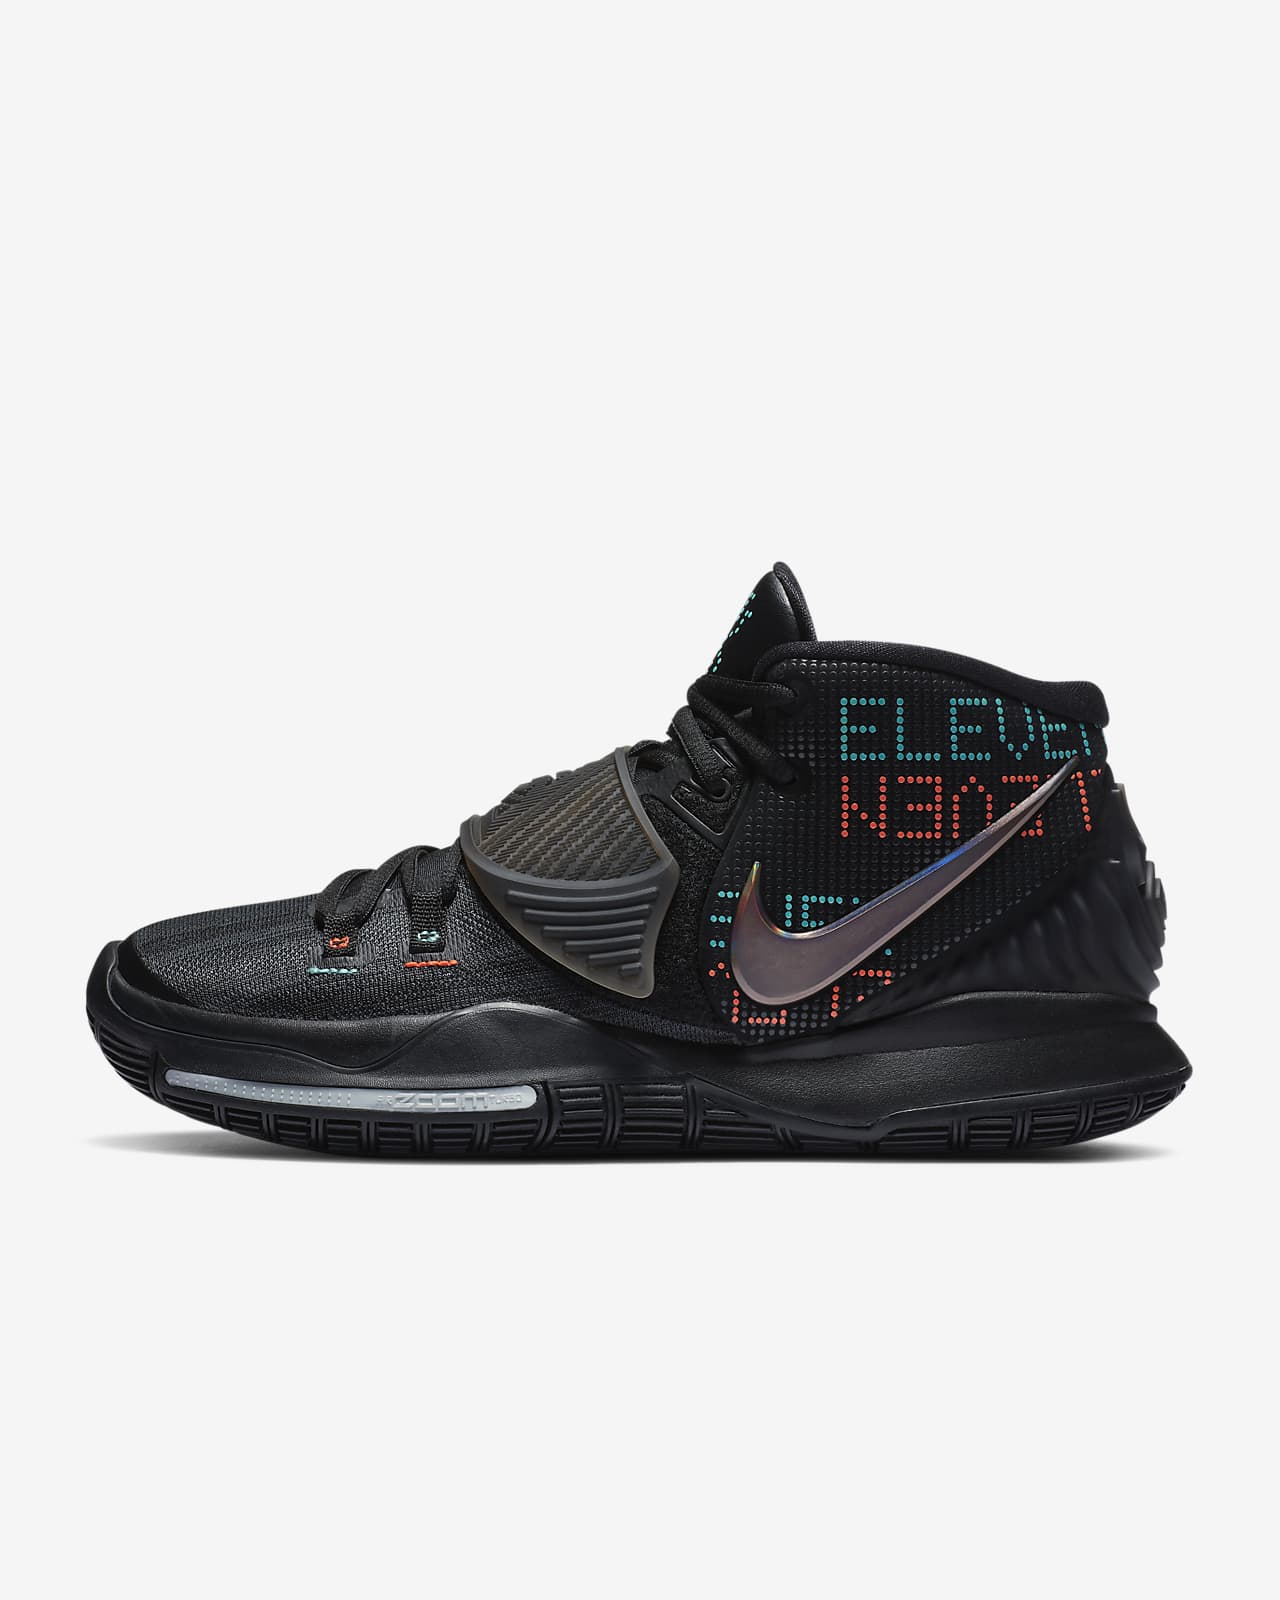 Triple Black' Basketball Shoe. Nike IL